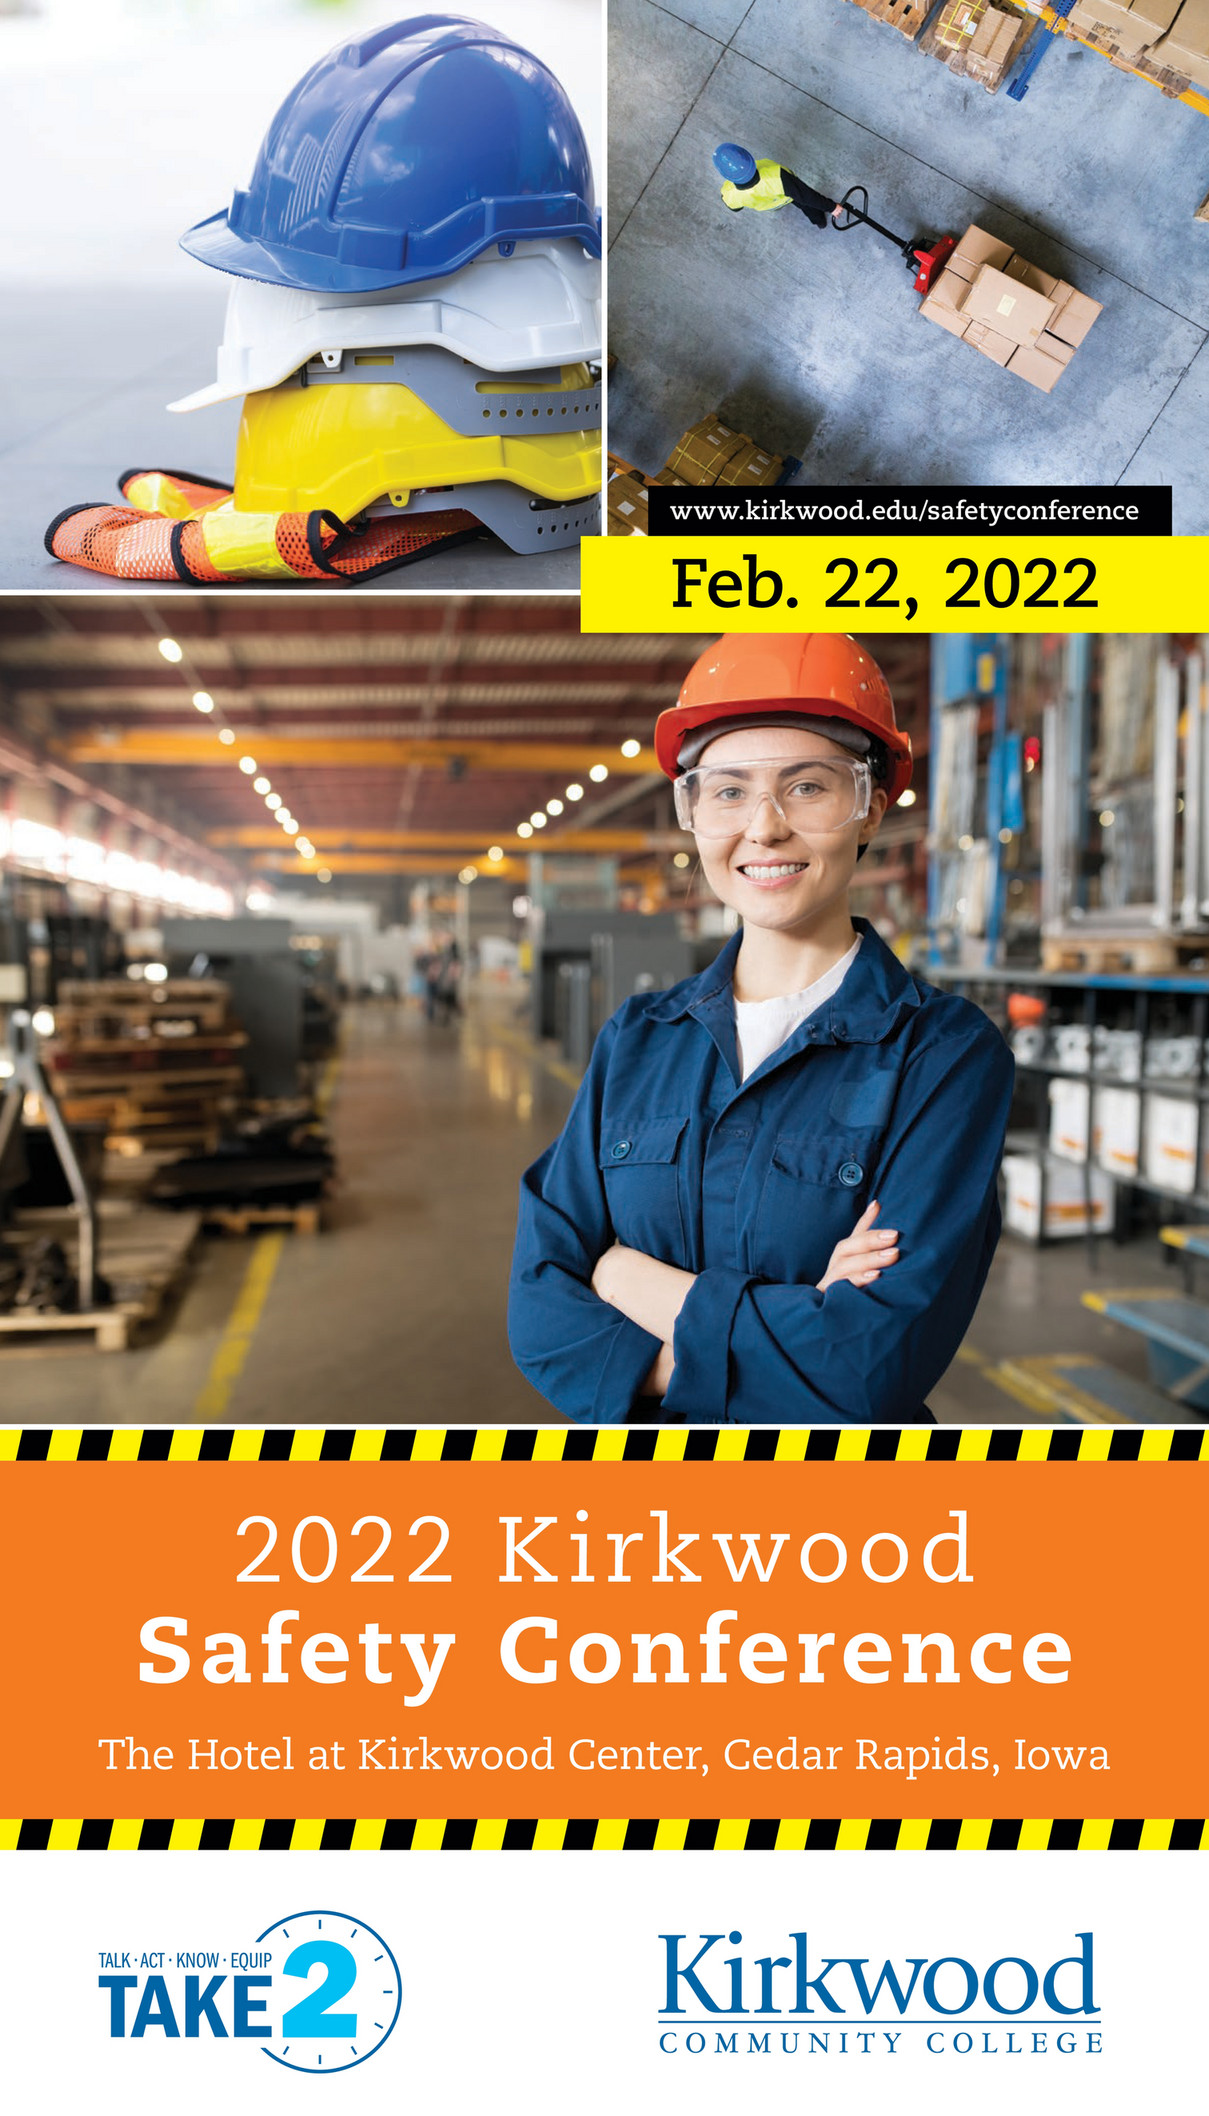 Kirkwood Community College Kirkwood Safety Conference 2022 brochure